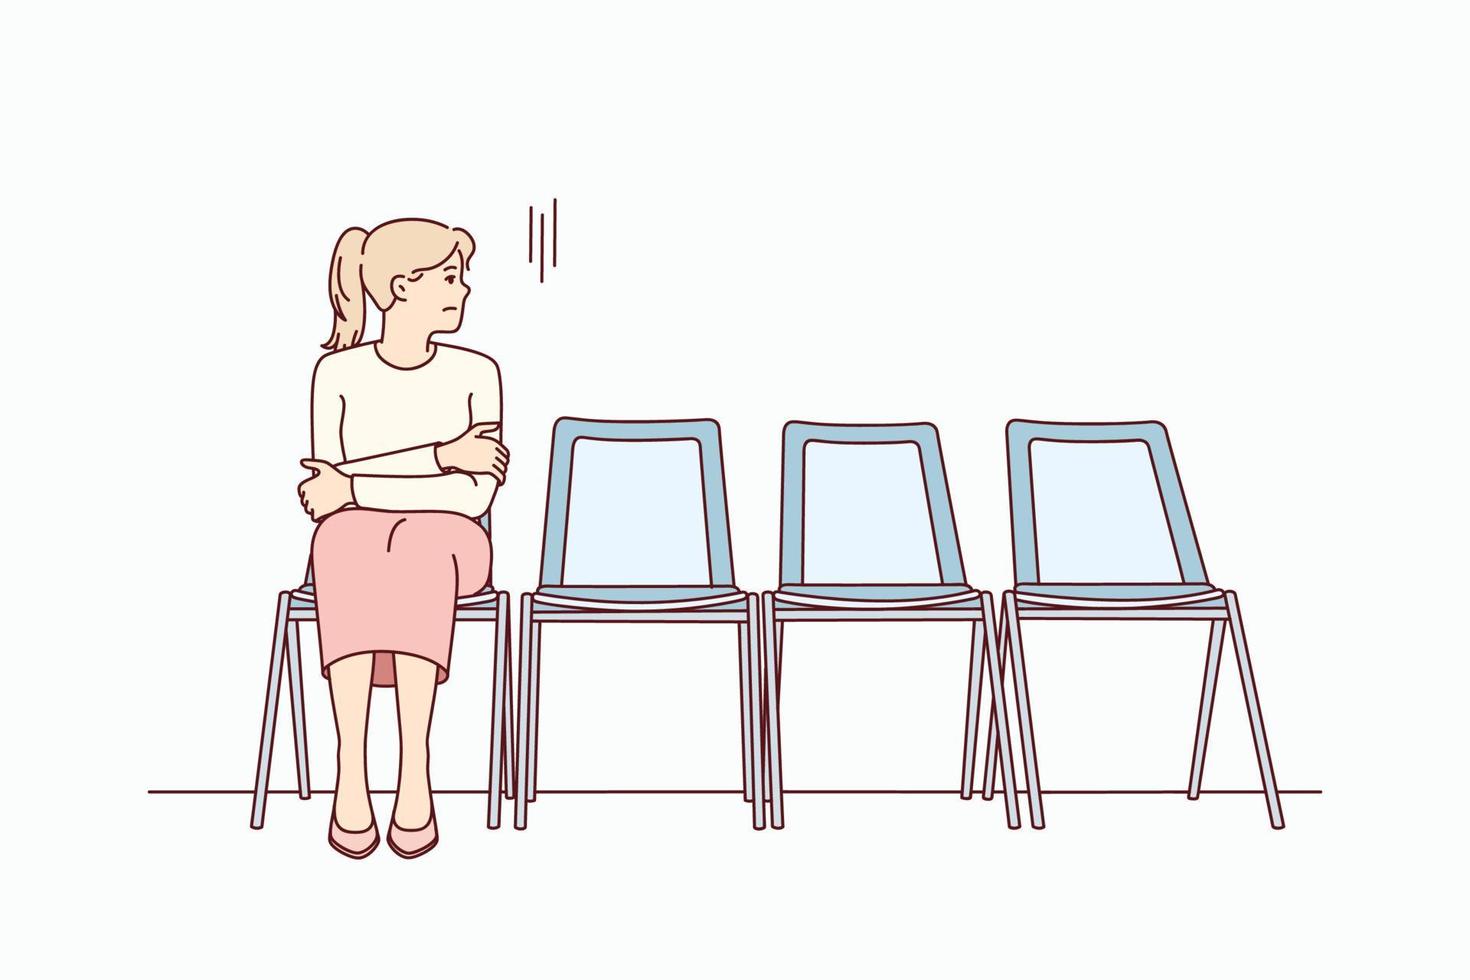 ansioso giovane donna sedersi su sedia nel corridoio in attesa o appuntamento. stressato femmina sentire preoccupato aspettare nel linea nel corridoio. vettore illustrazione.